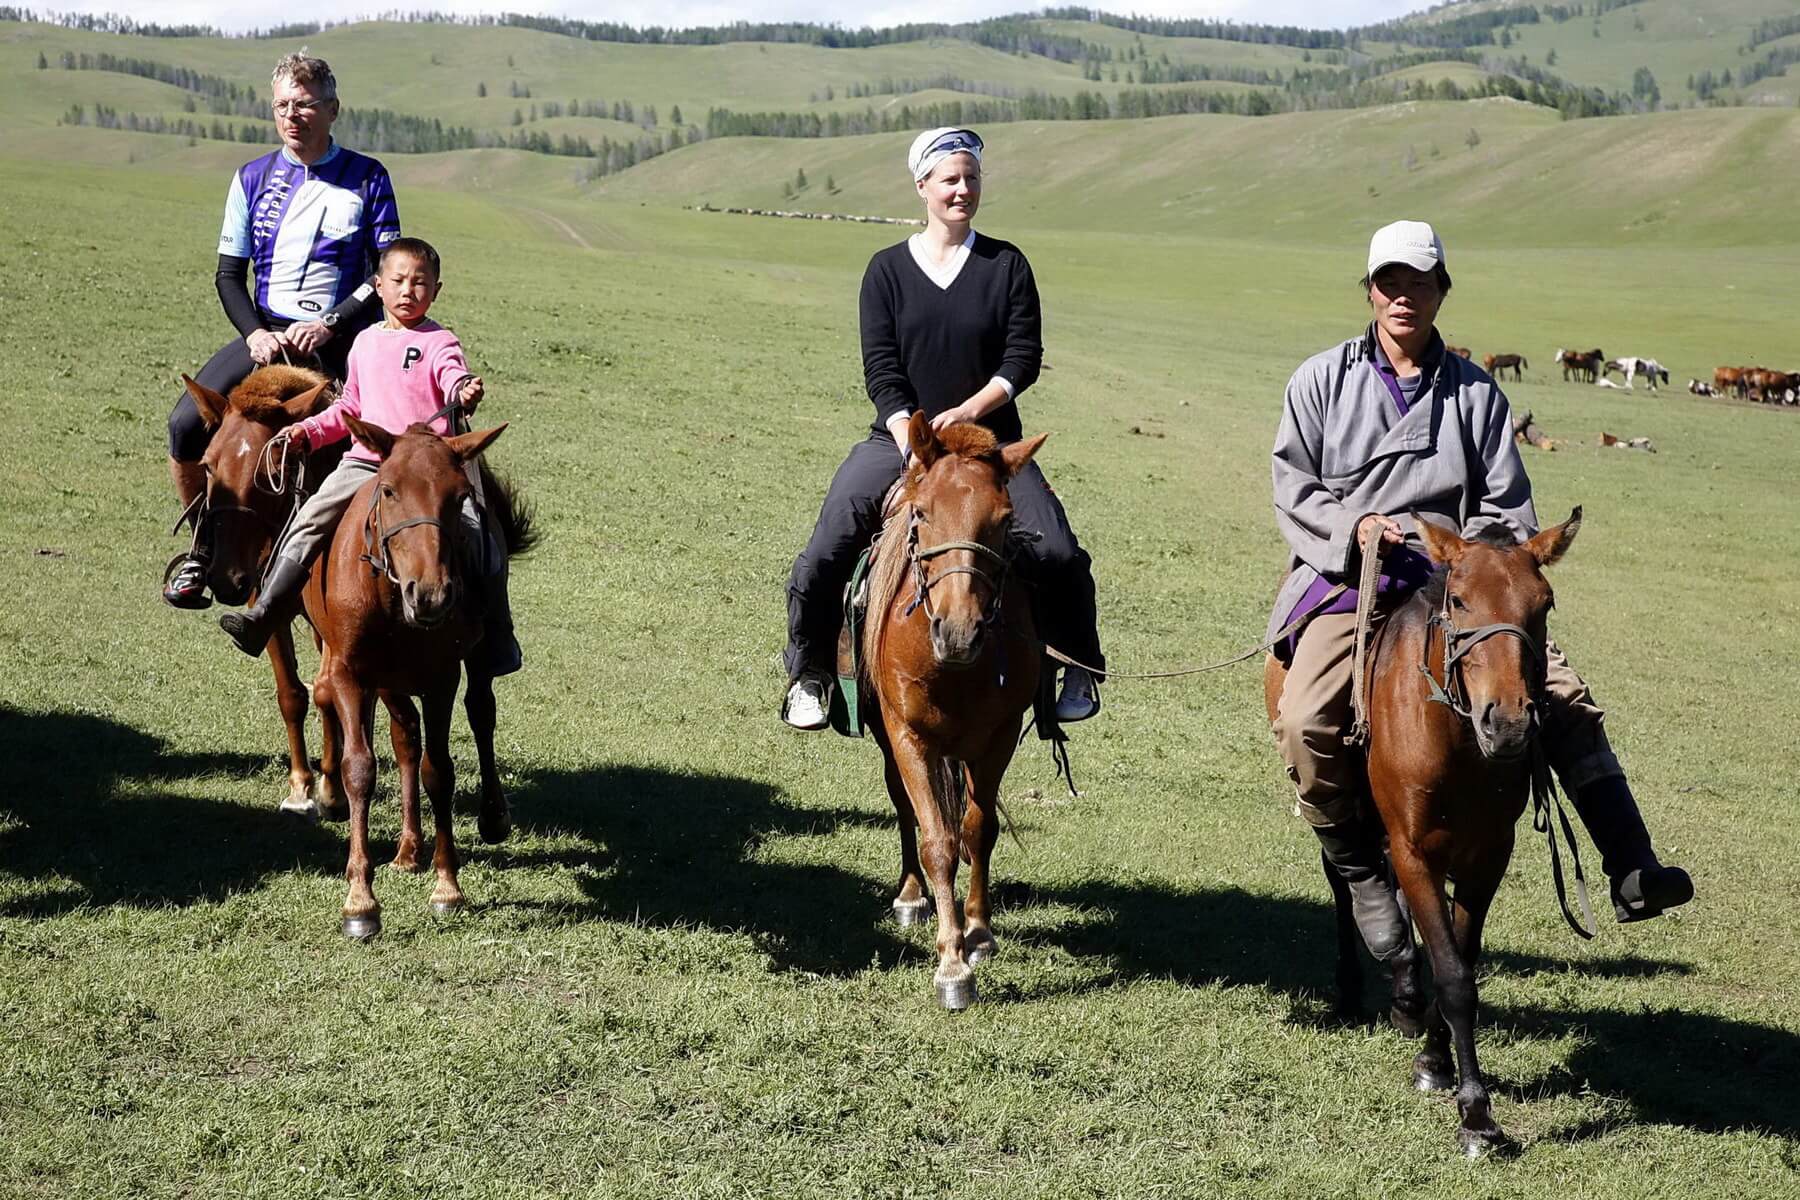 Reiten gehört zur Mongolei einfach dazu und sollte Teil jeder Mongolei Reise sein. Bei einem Ritt durch die weite, unberührte Landschaft stellt sich ein absolutes Gefühl der Freiheit ein.